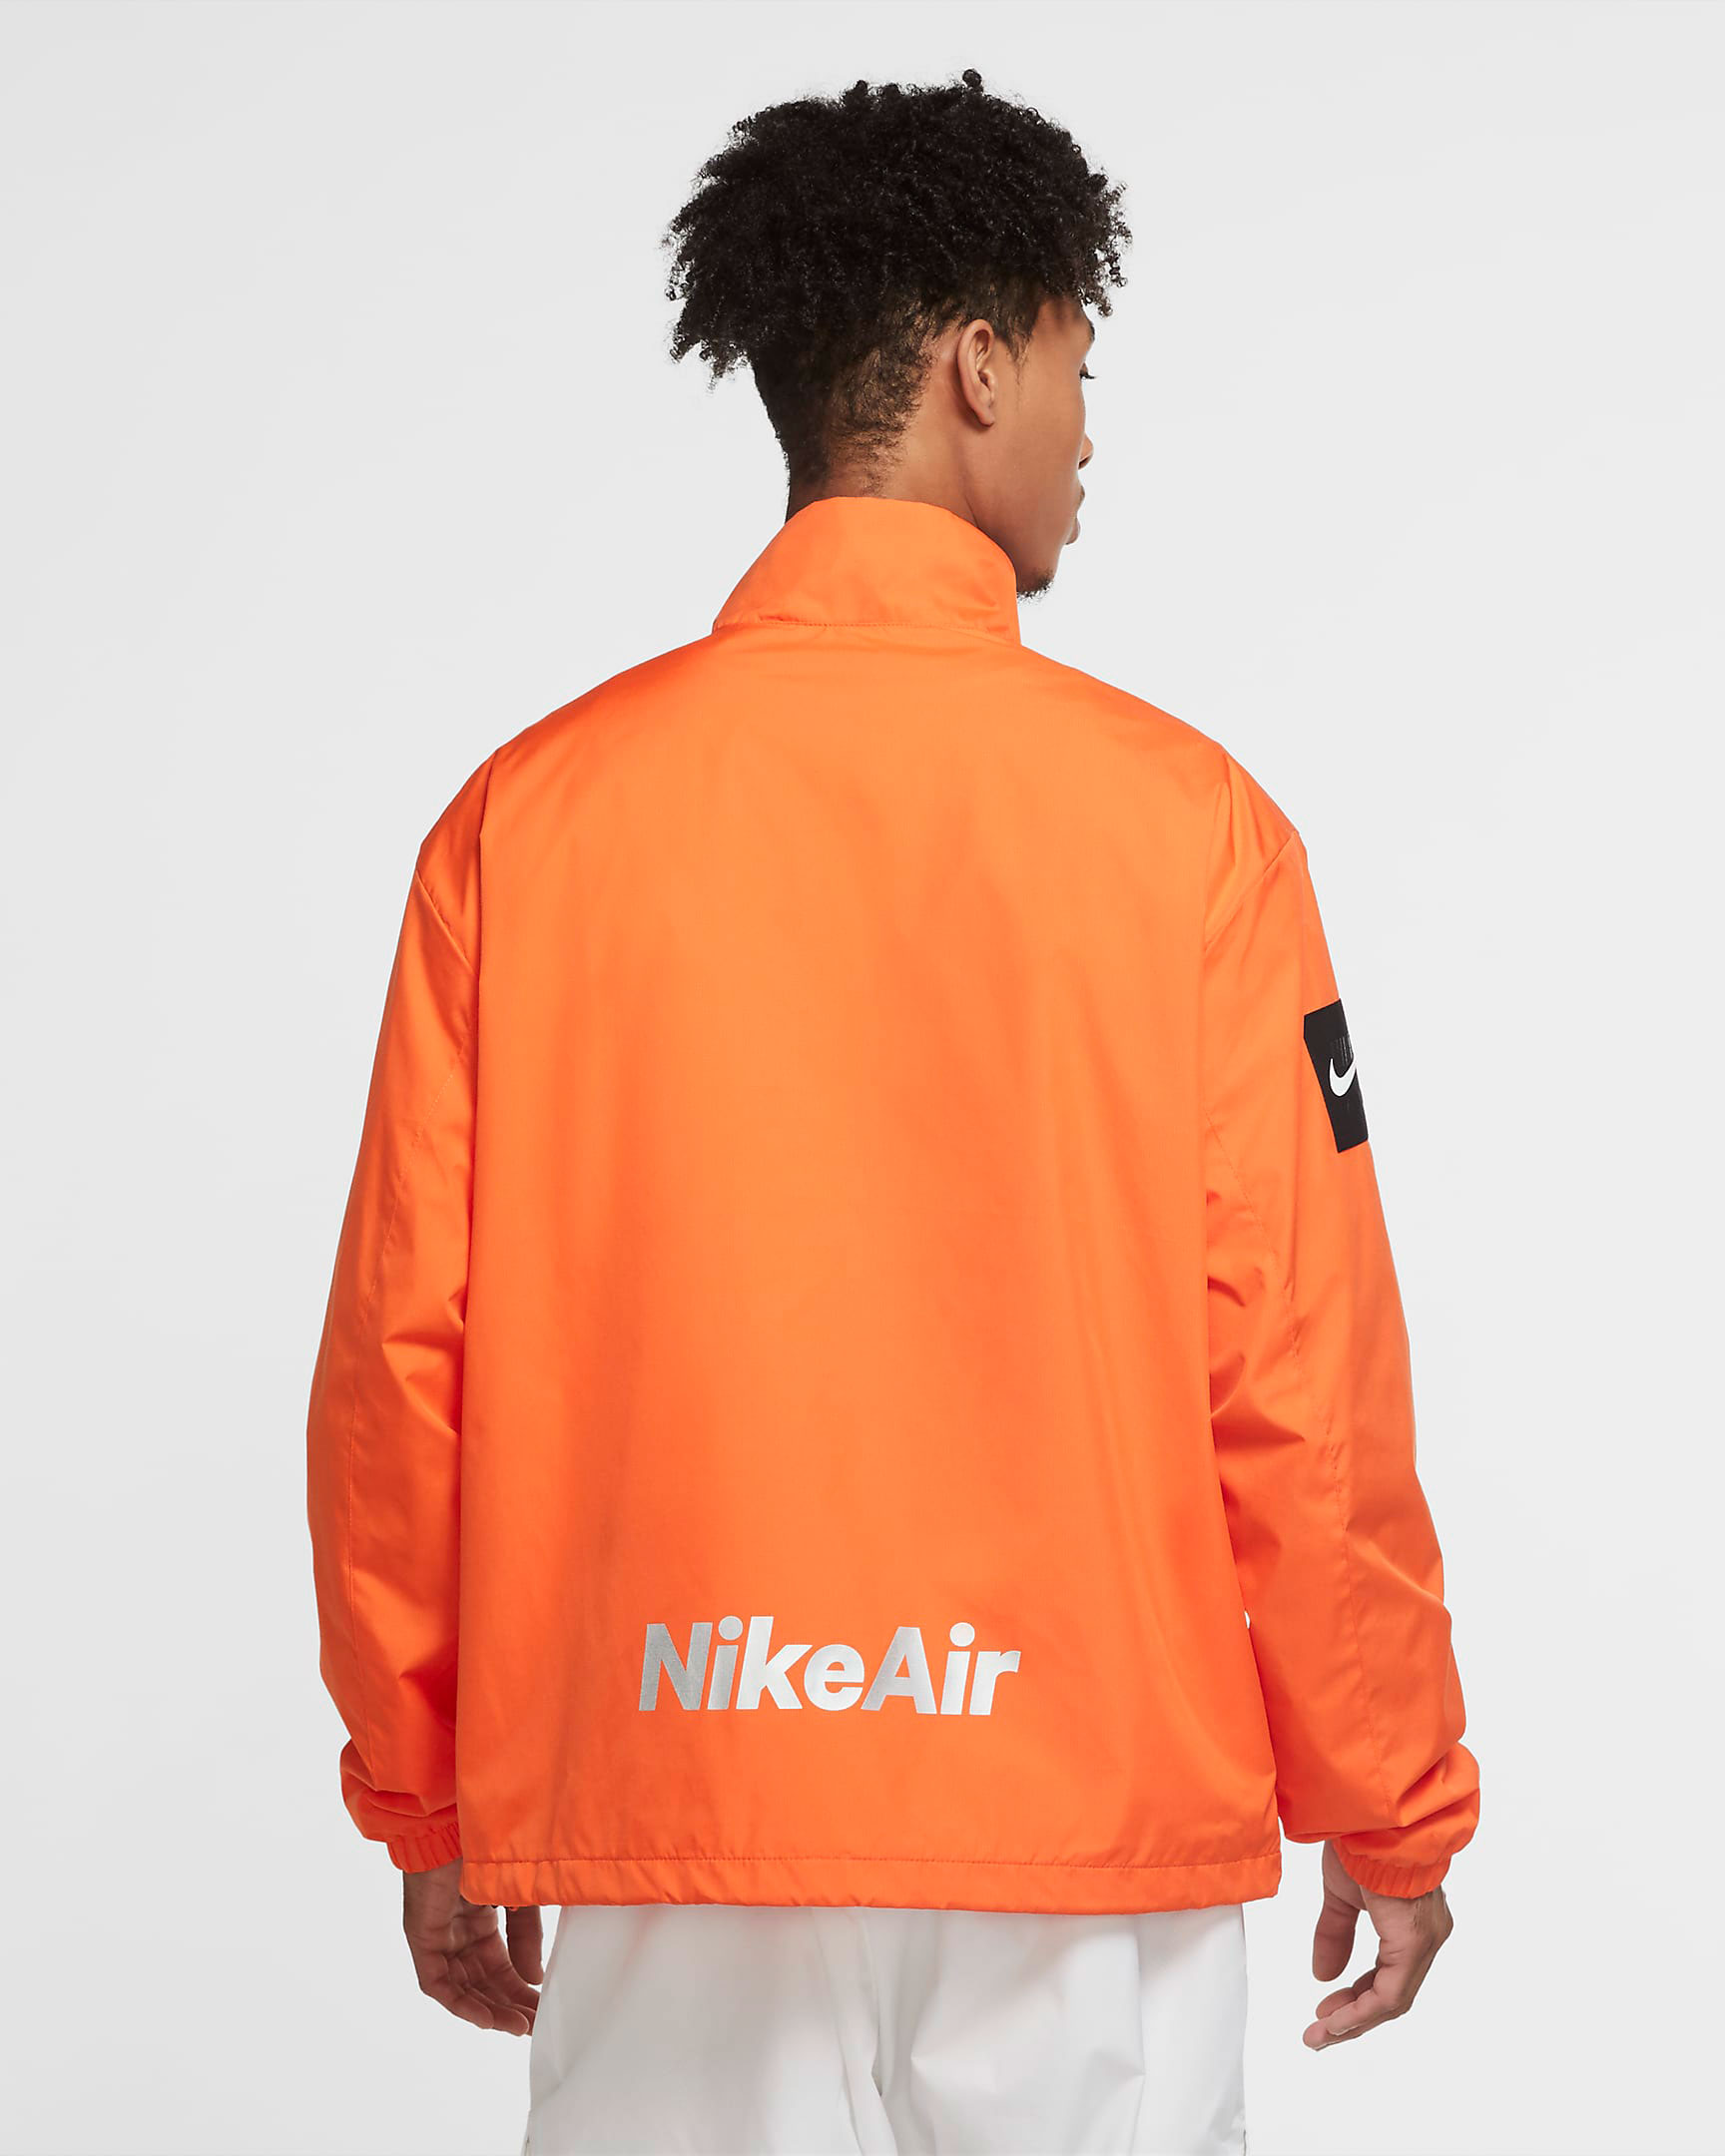 nike-air-reflective-jacket-electro-orange-5